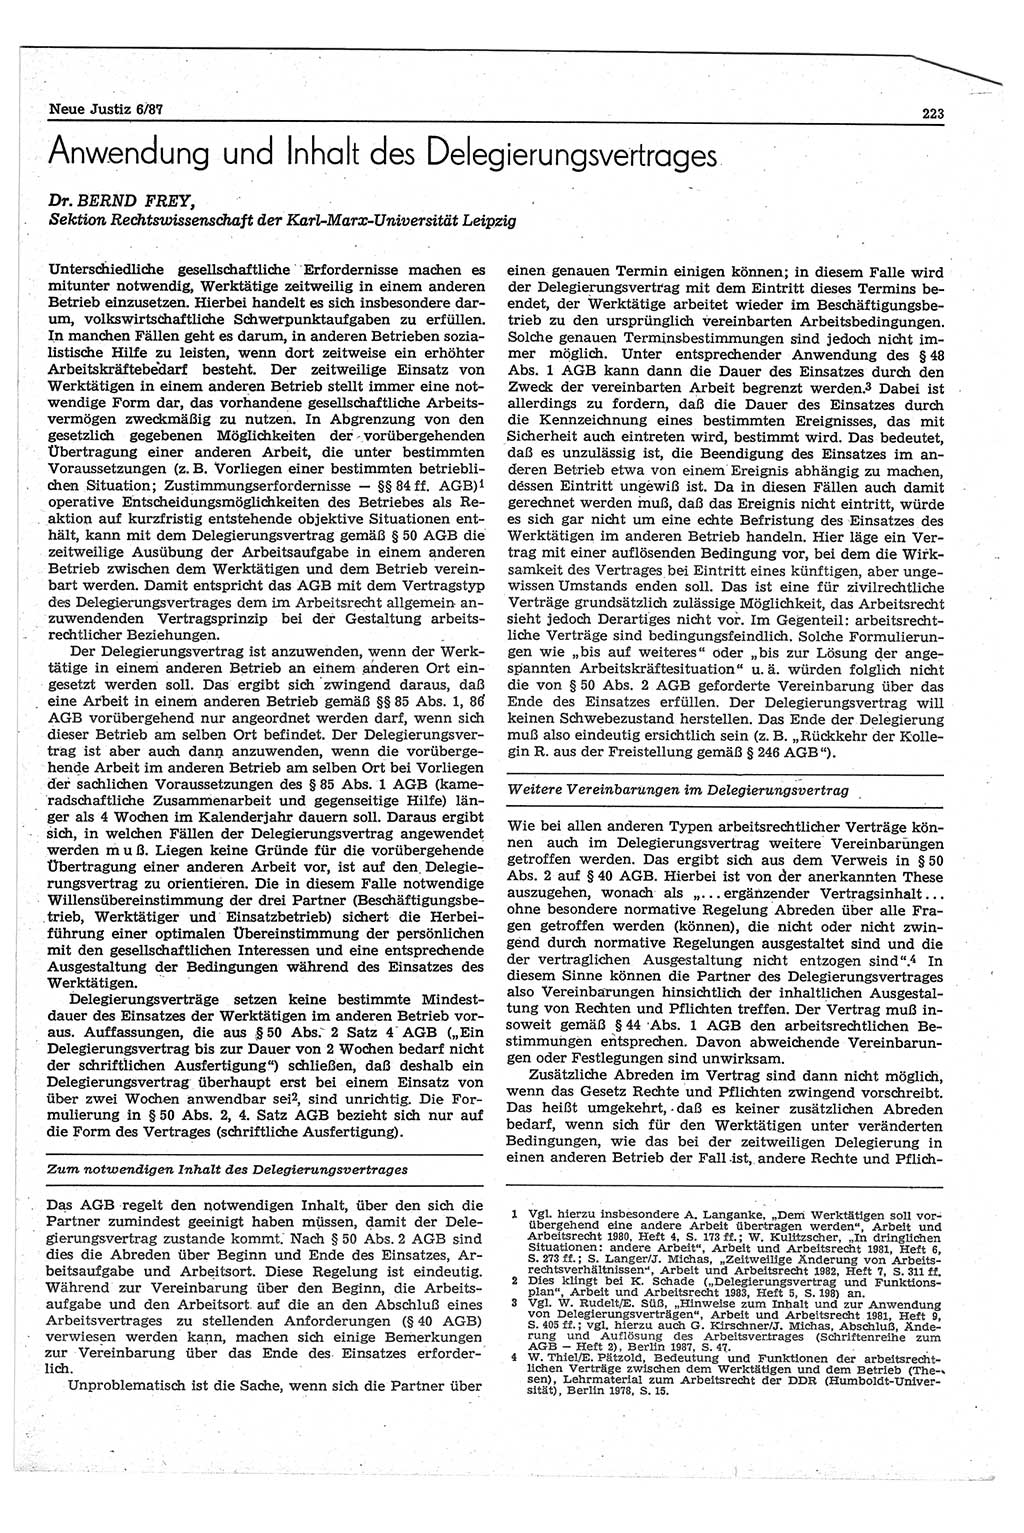 Neue Justiz (NJ), Zeitschrift für sozialistisches Recht und Gesetzlichkeit [Deutsche Demokratische Republik (DDR)], 41. Jahrgang 1987, Seite 223 (NJ DDR 1987, S. 223)